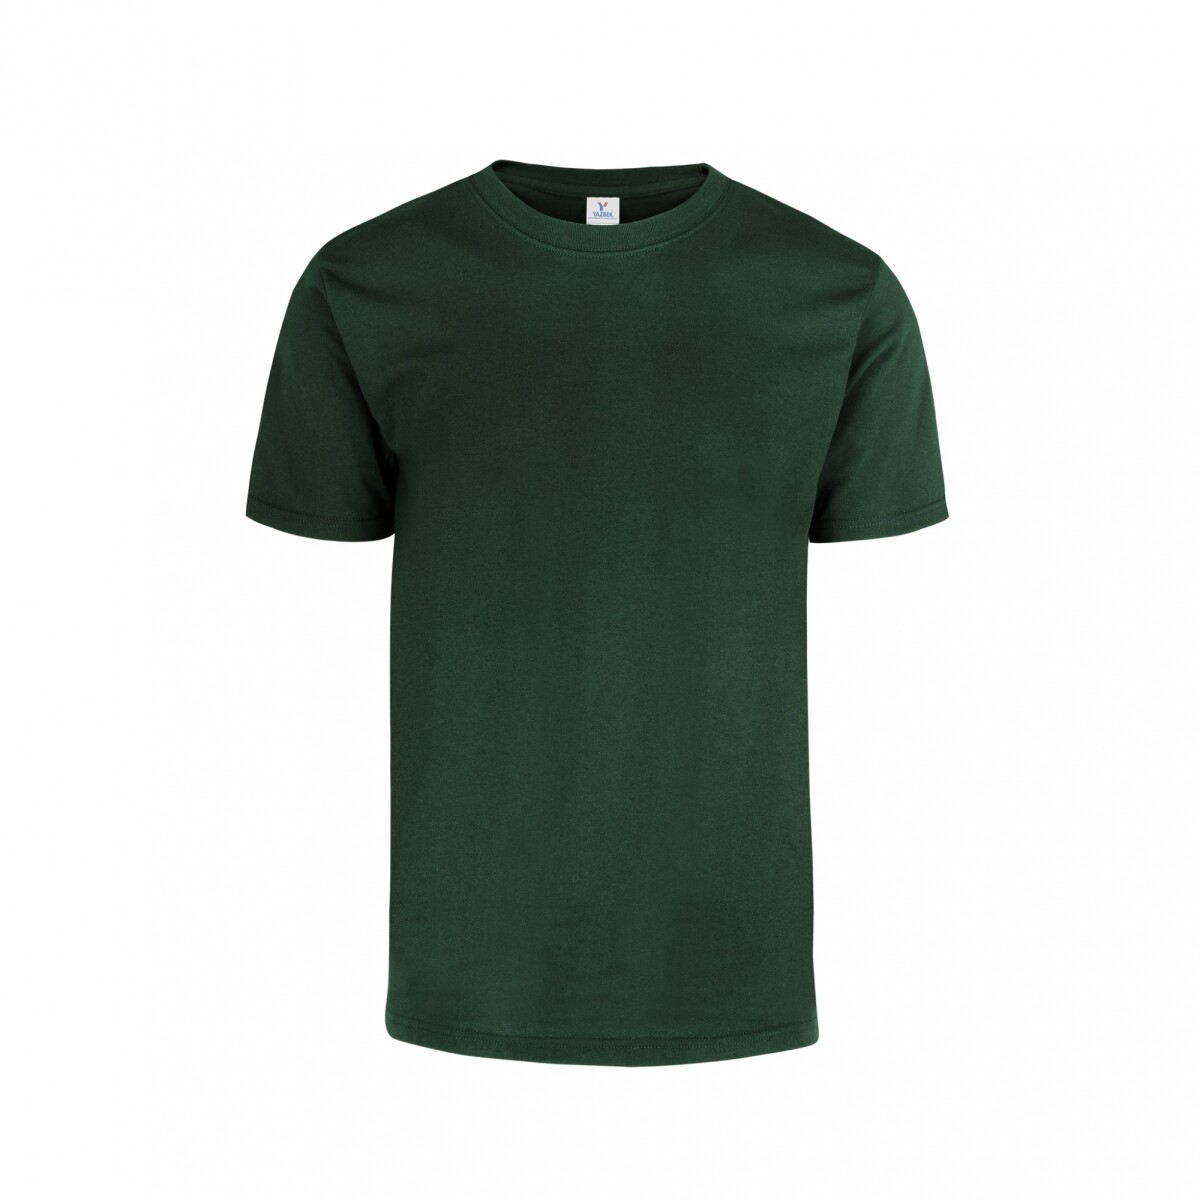 Camiseta a la base peso completo - Verde bosque 